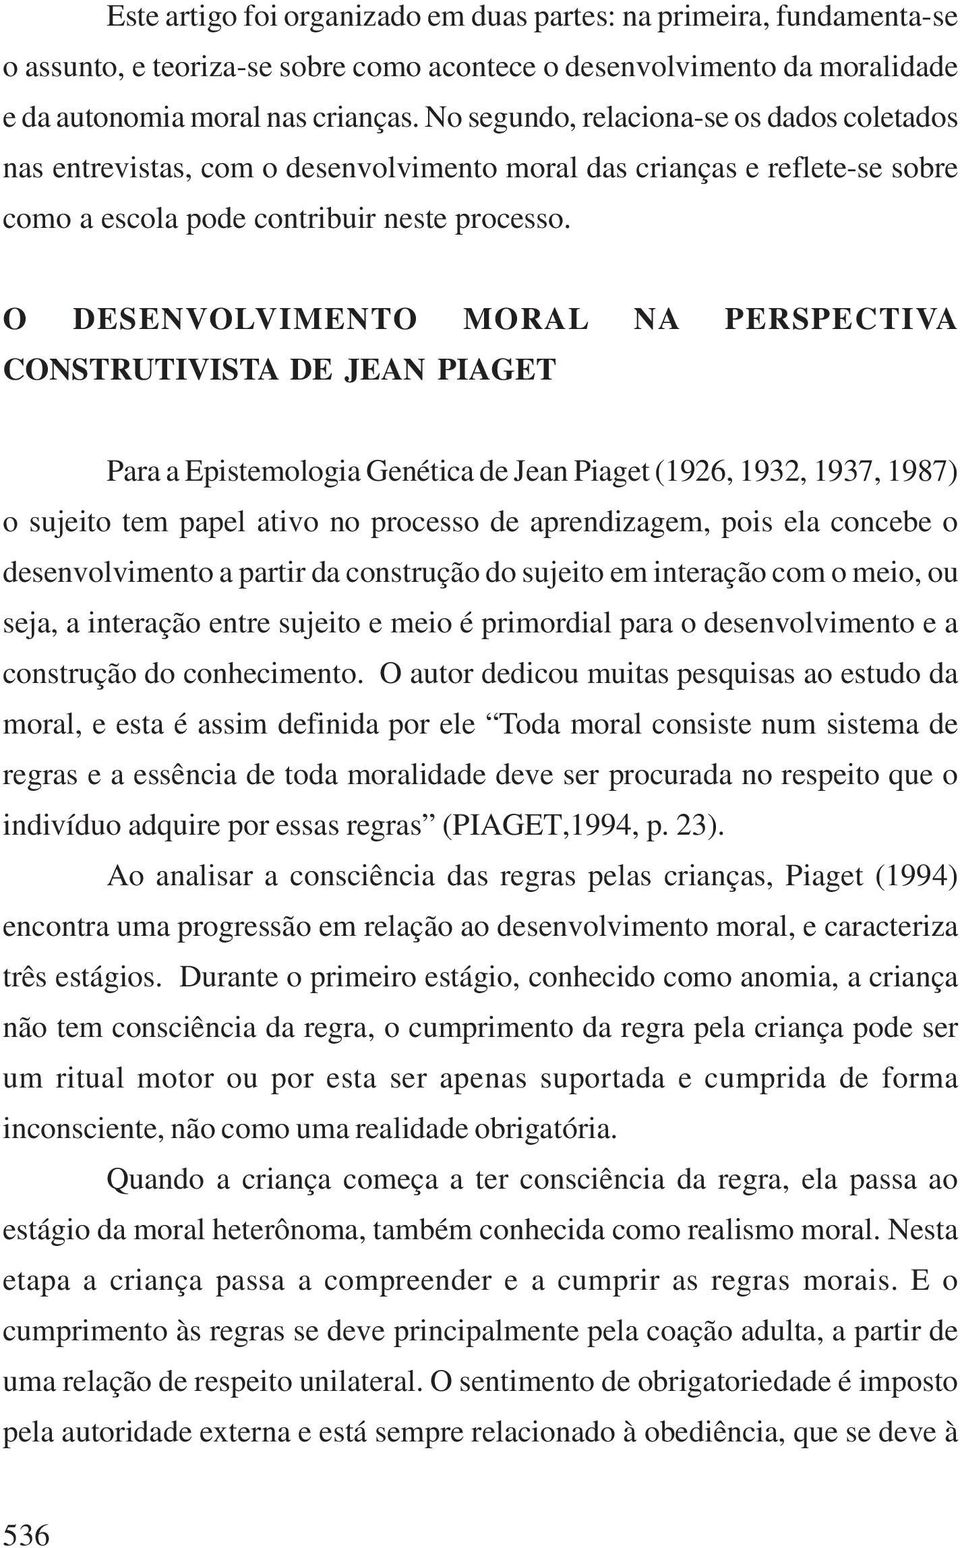 O DESENVOLVIMENTO MORAL NA PERSPECTIVA CONSTRUTIVISTA DE JEAN PIAGET Para a Epistemologia Genética de Jean Piaget (1926, 1932, 1937, 1987) o sujeito tem papel ativo no processo de aprendizagem, pois